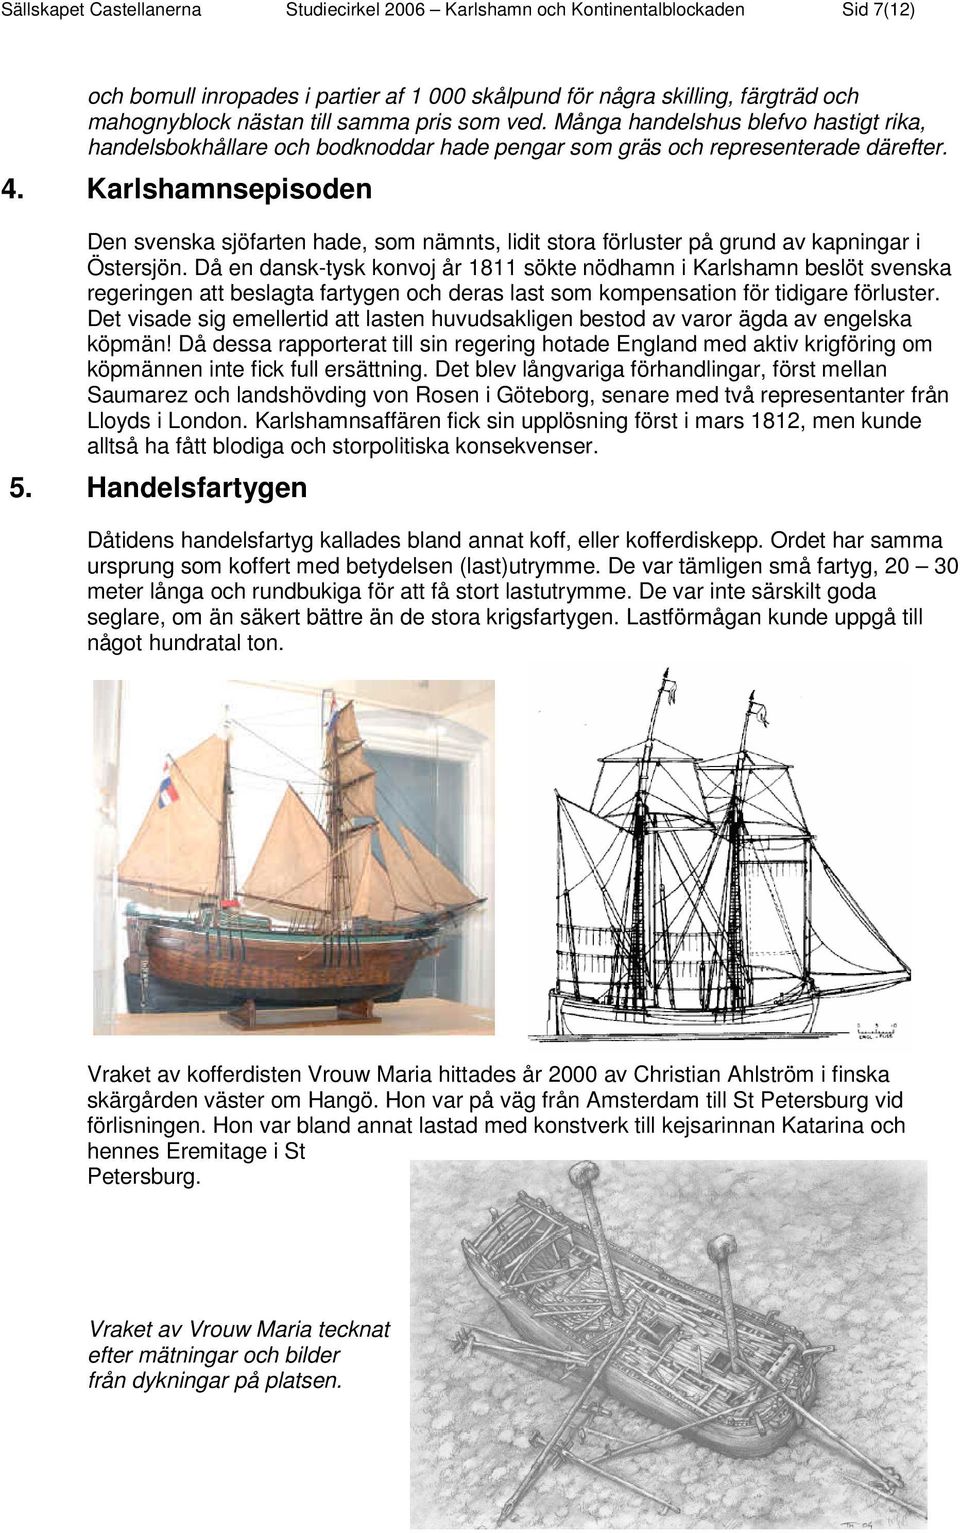 Karlshamnsepisoden Den svenska sjöfarten hade, som nämnts, lidit stora förluster på grund av kapningar i Östersjön.